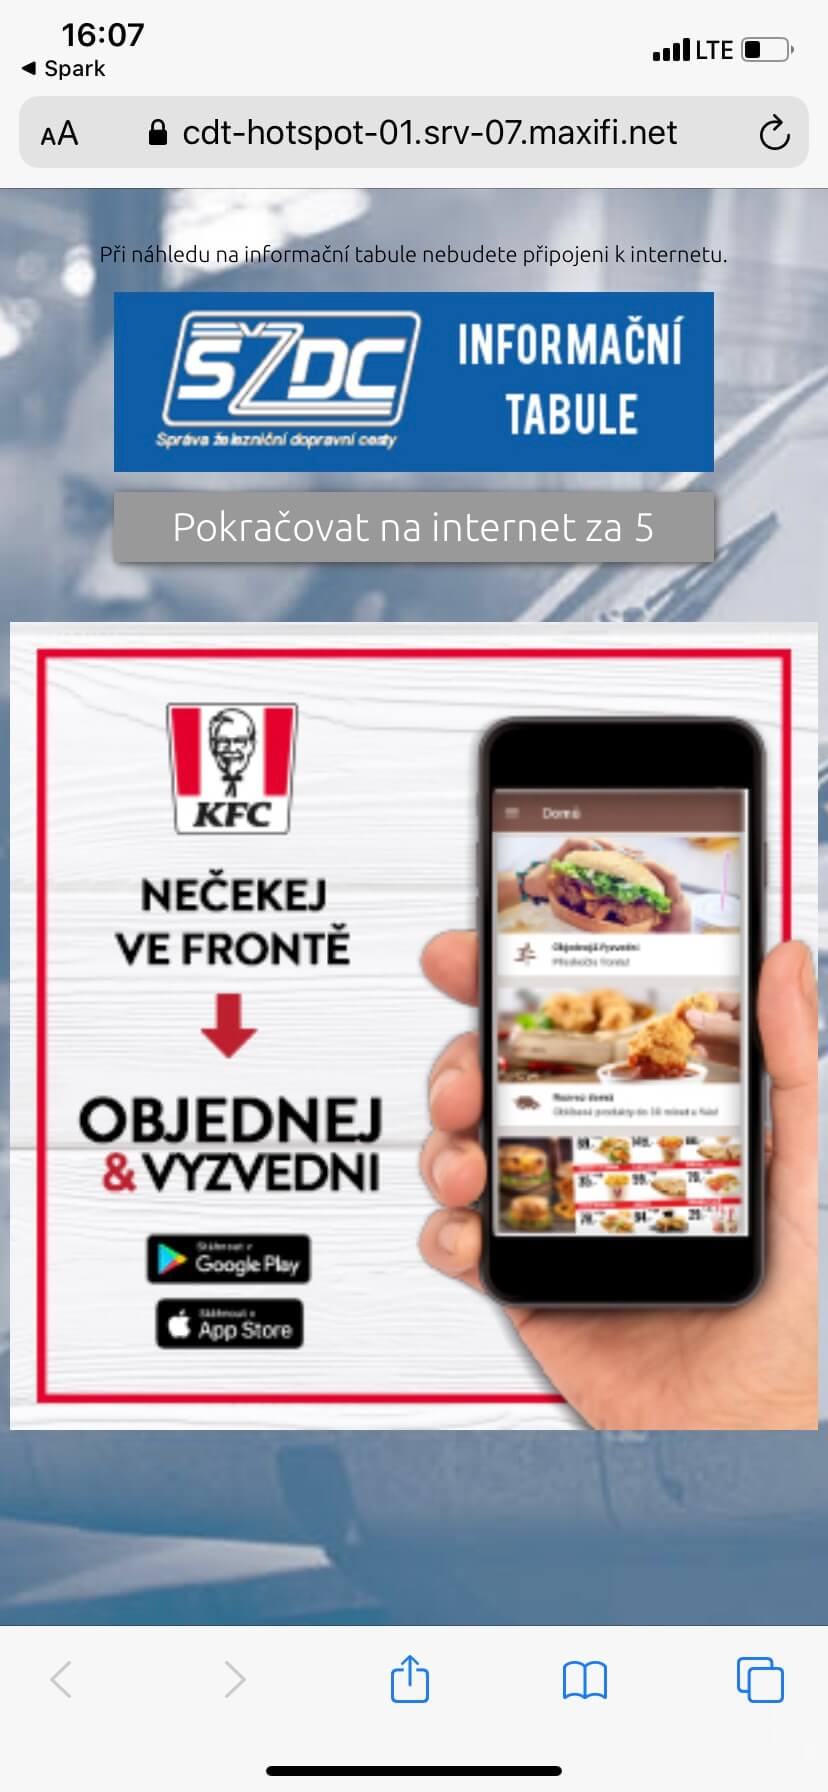 Wi-FiAd-KFC